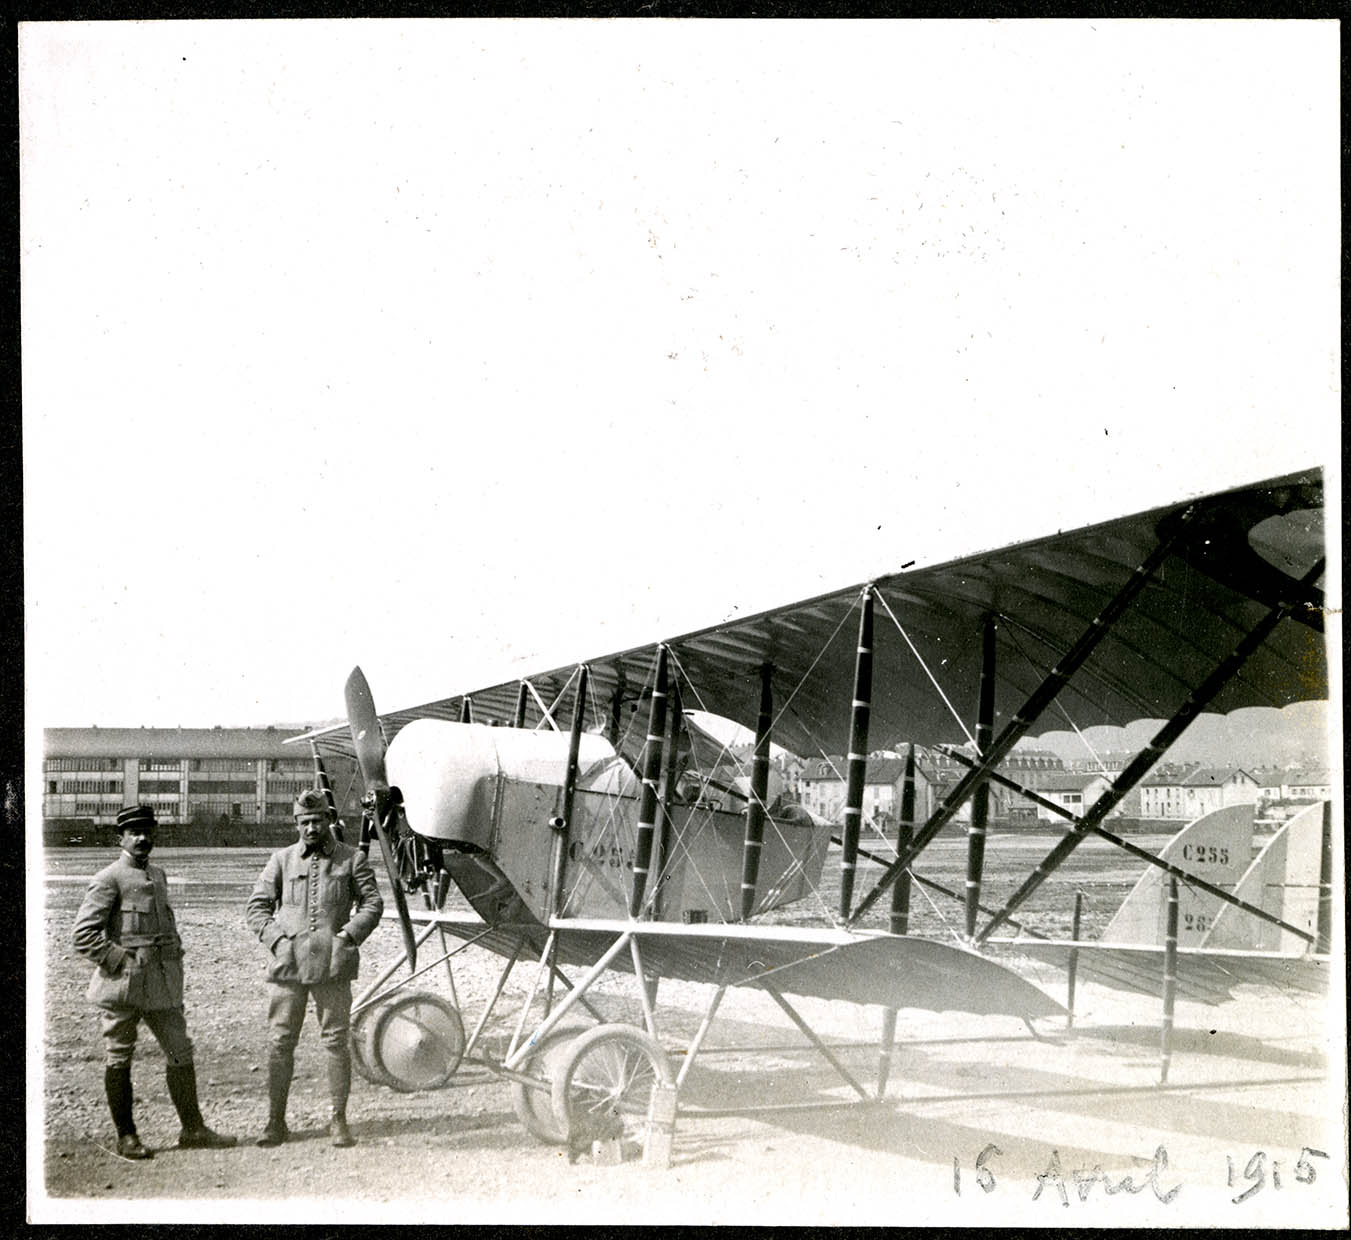 Belfort, Centre aéronautique militaire, Champ-de-Mars (Parc-à-Ballons), un avion de reconnaissance français, le 15 avril 1915.